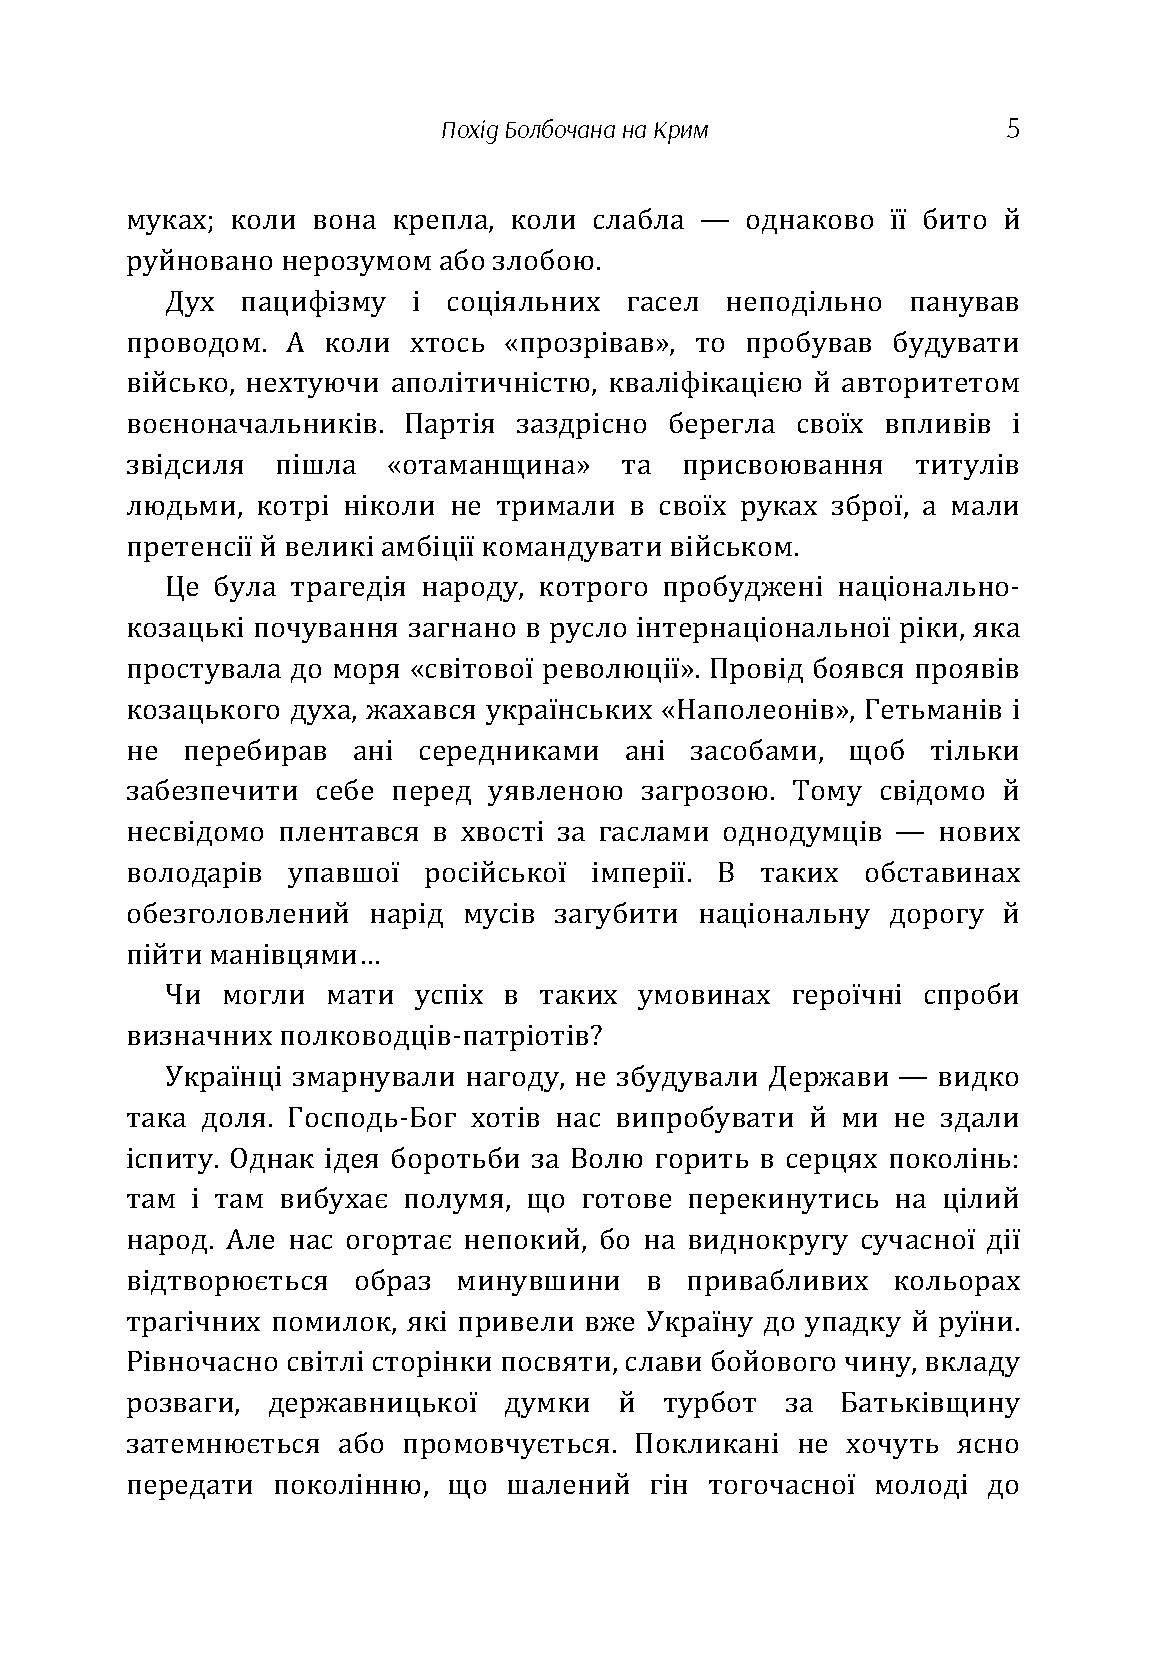 Похід Болбочана на Крим. Автор — Монкевич Борис. 